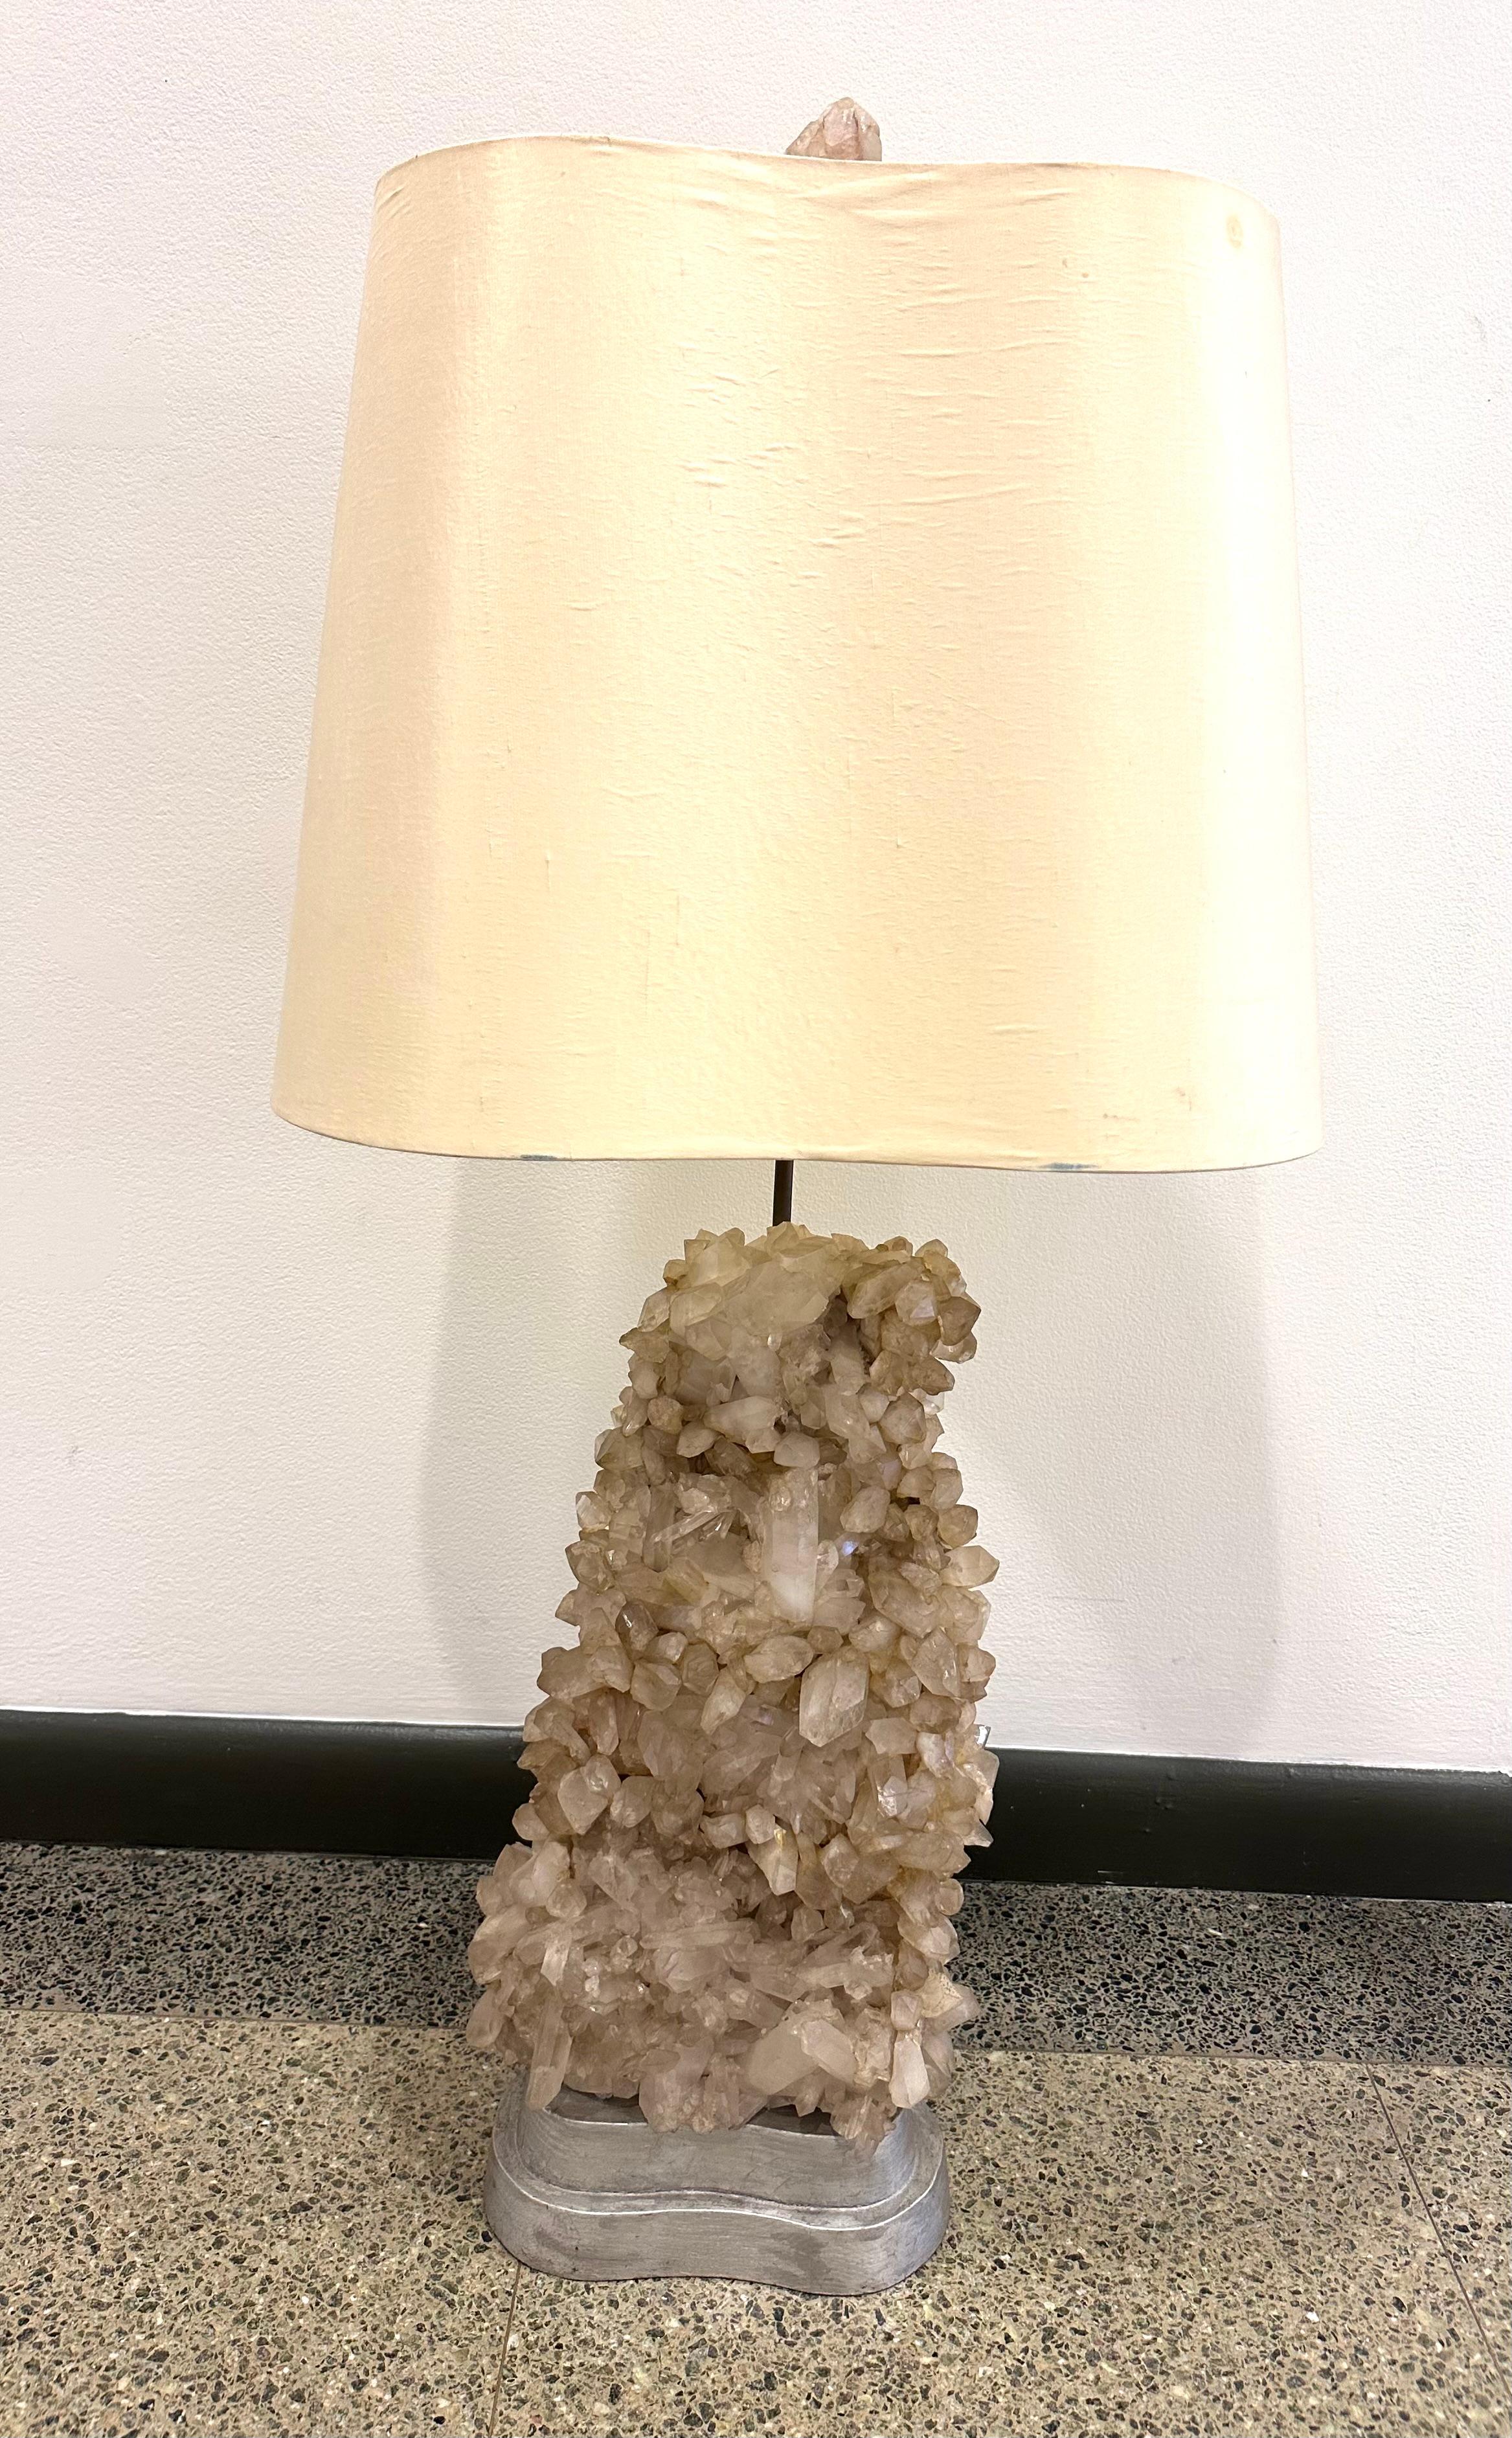 Grand exemplaire de la lampe de table classique fabriquée en studio par Carole Stupell. Le cristal de Quartz naturel repose sur un socle en bois argenté à deux niveaux en forme de haricot. 

L'abat-jour original personnalisé reflète la forme de la